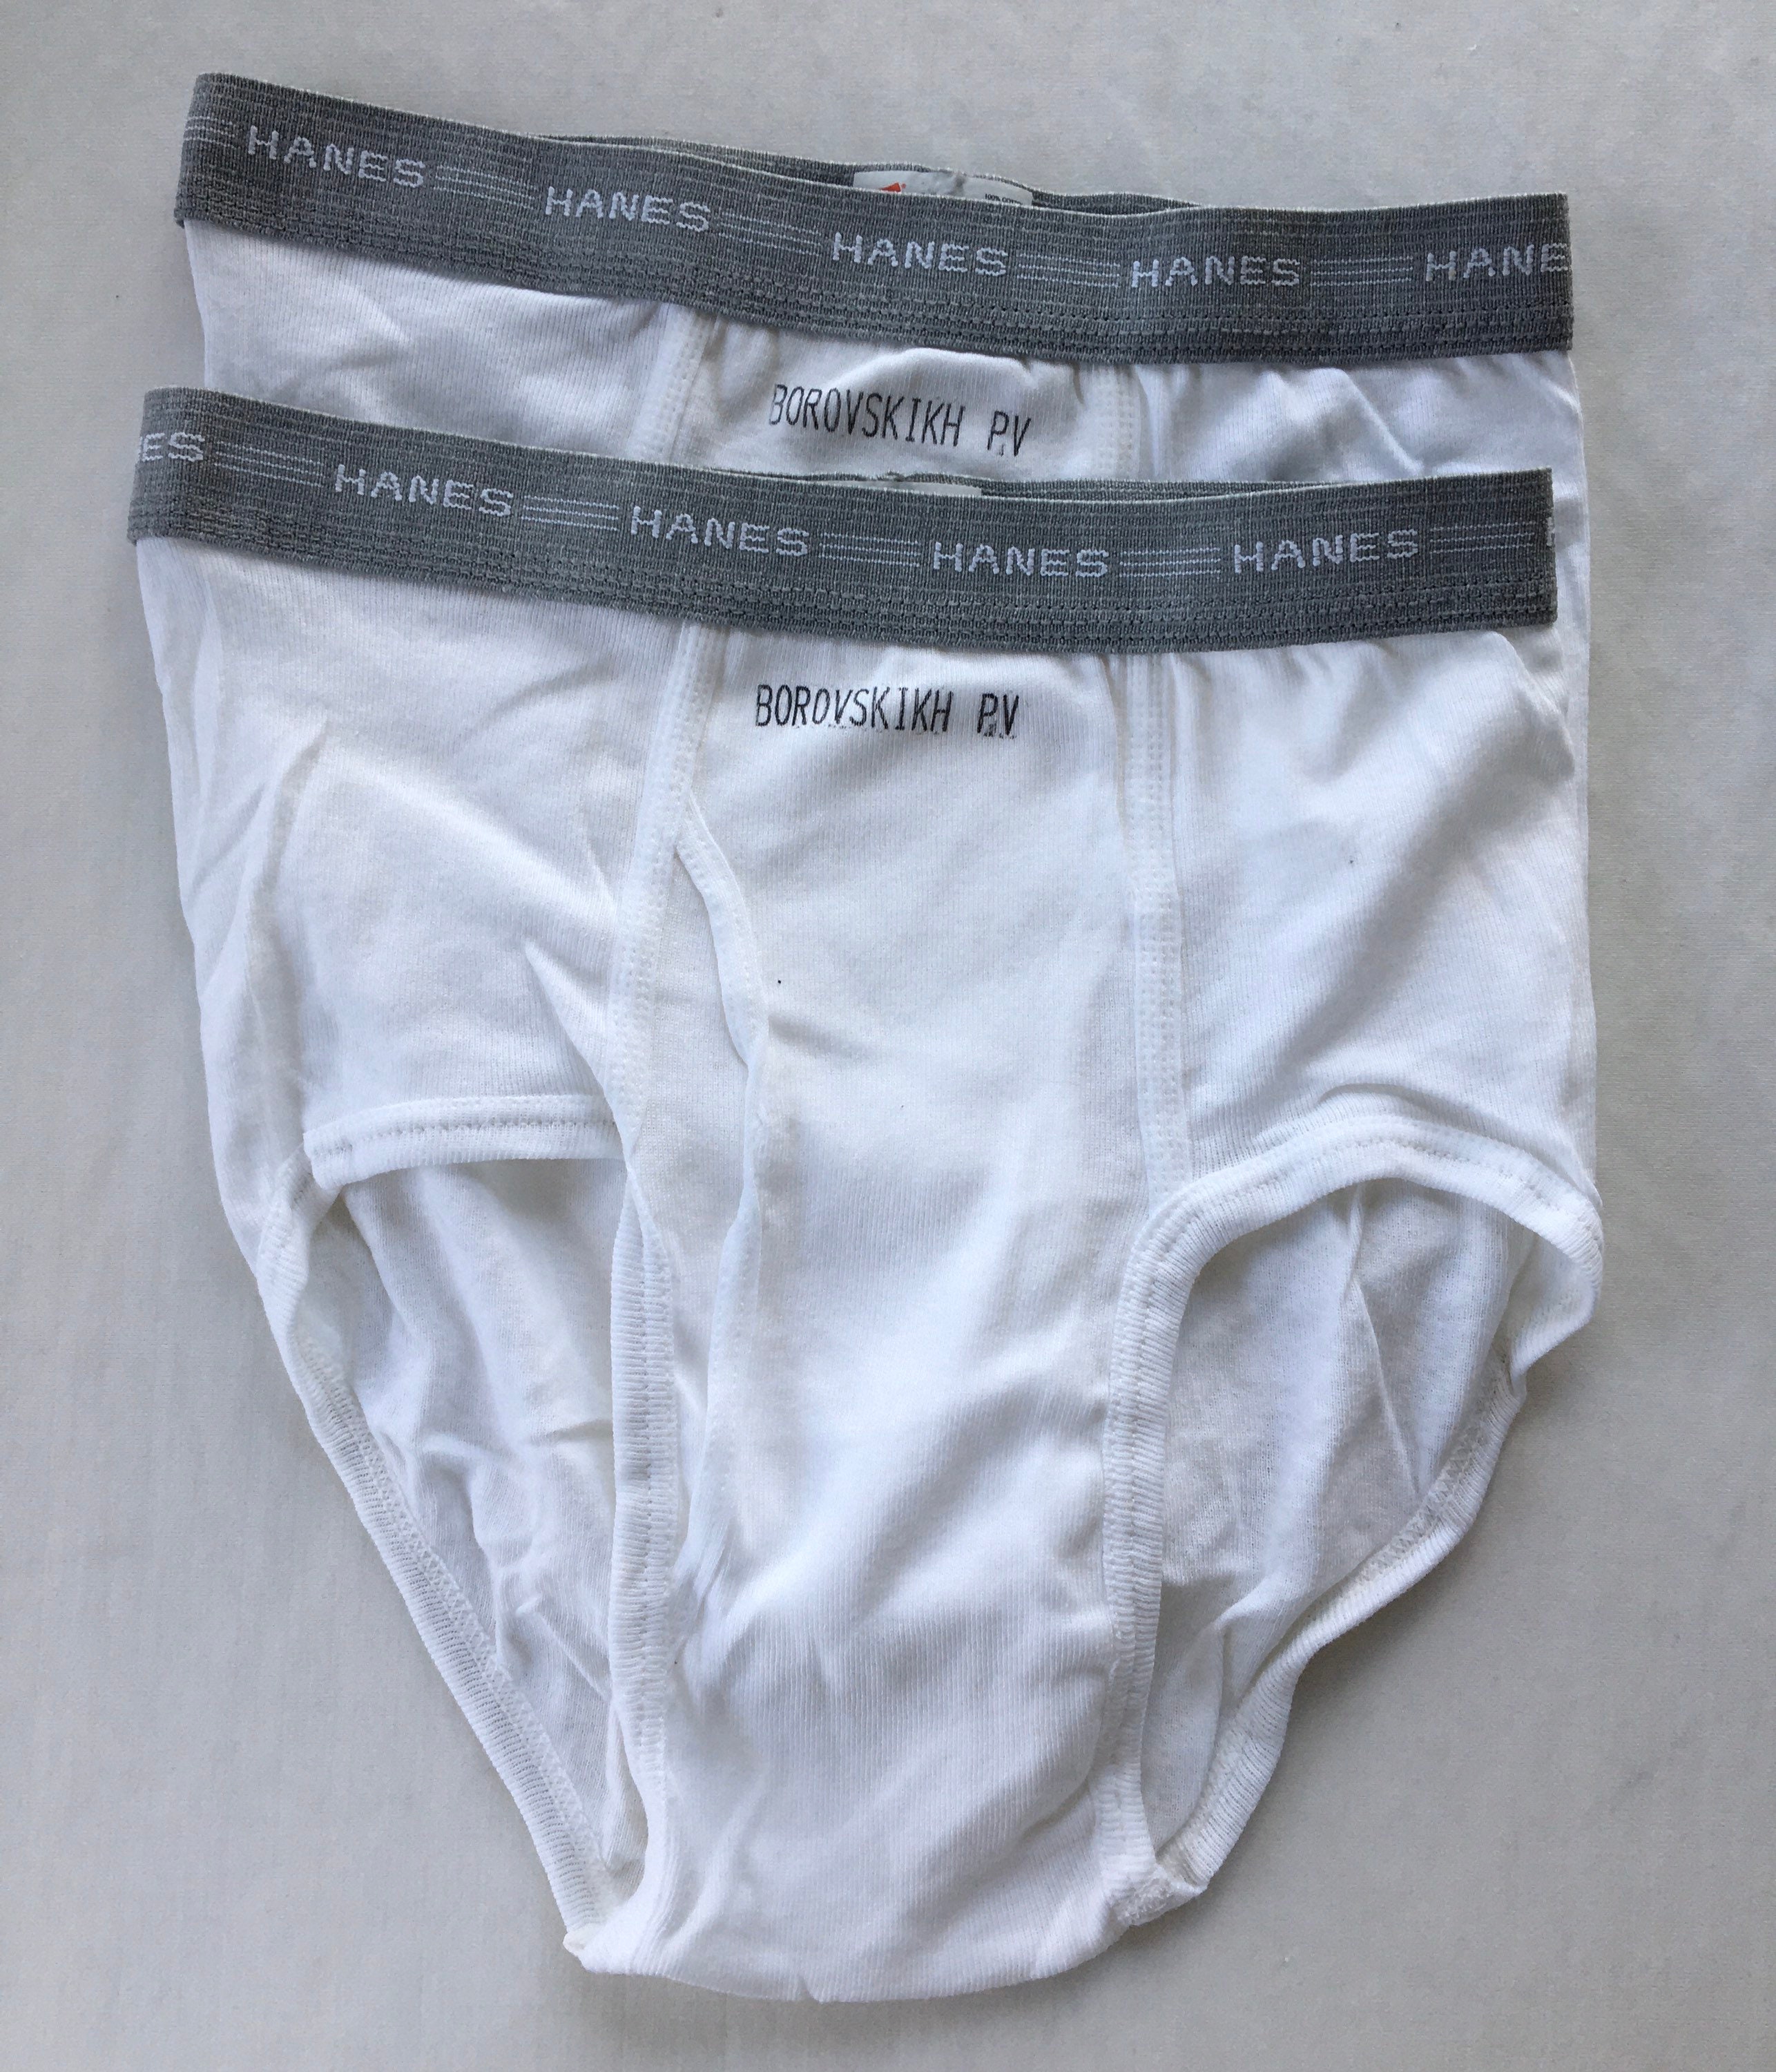 Vintage Hanes Briefs Cotton Underwear Tighty Whities Mens Size 32